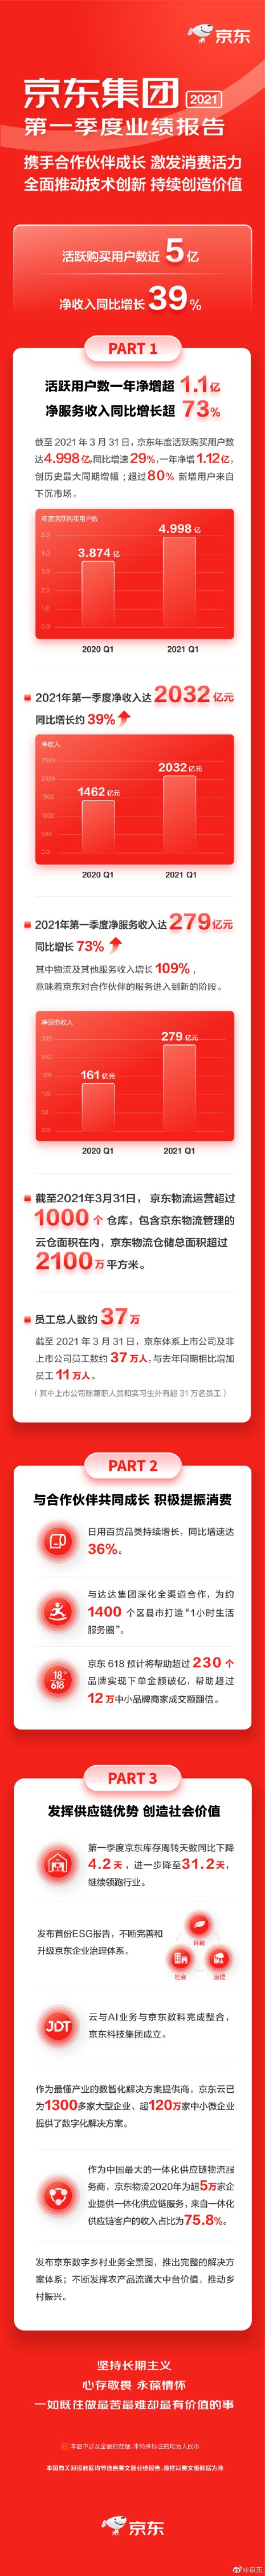 京东集团今年一季度净收入2032亿元 活跃用户近5亿